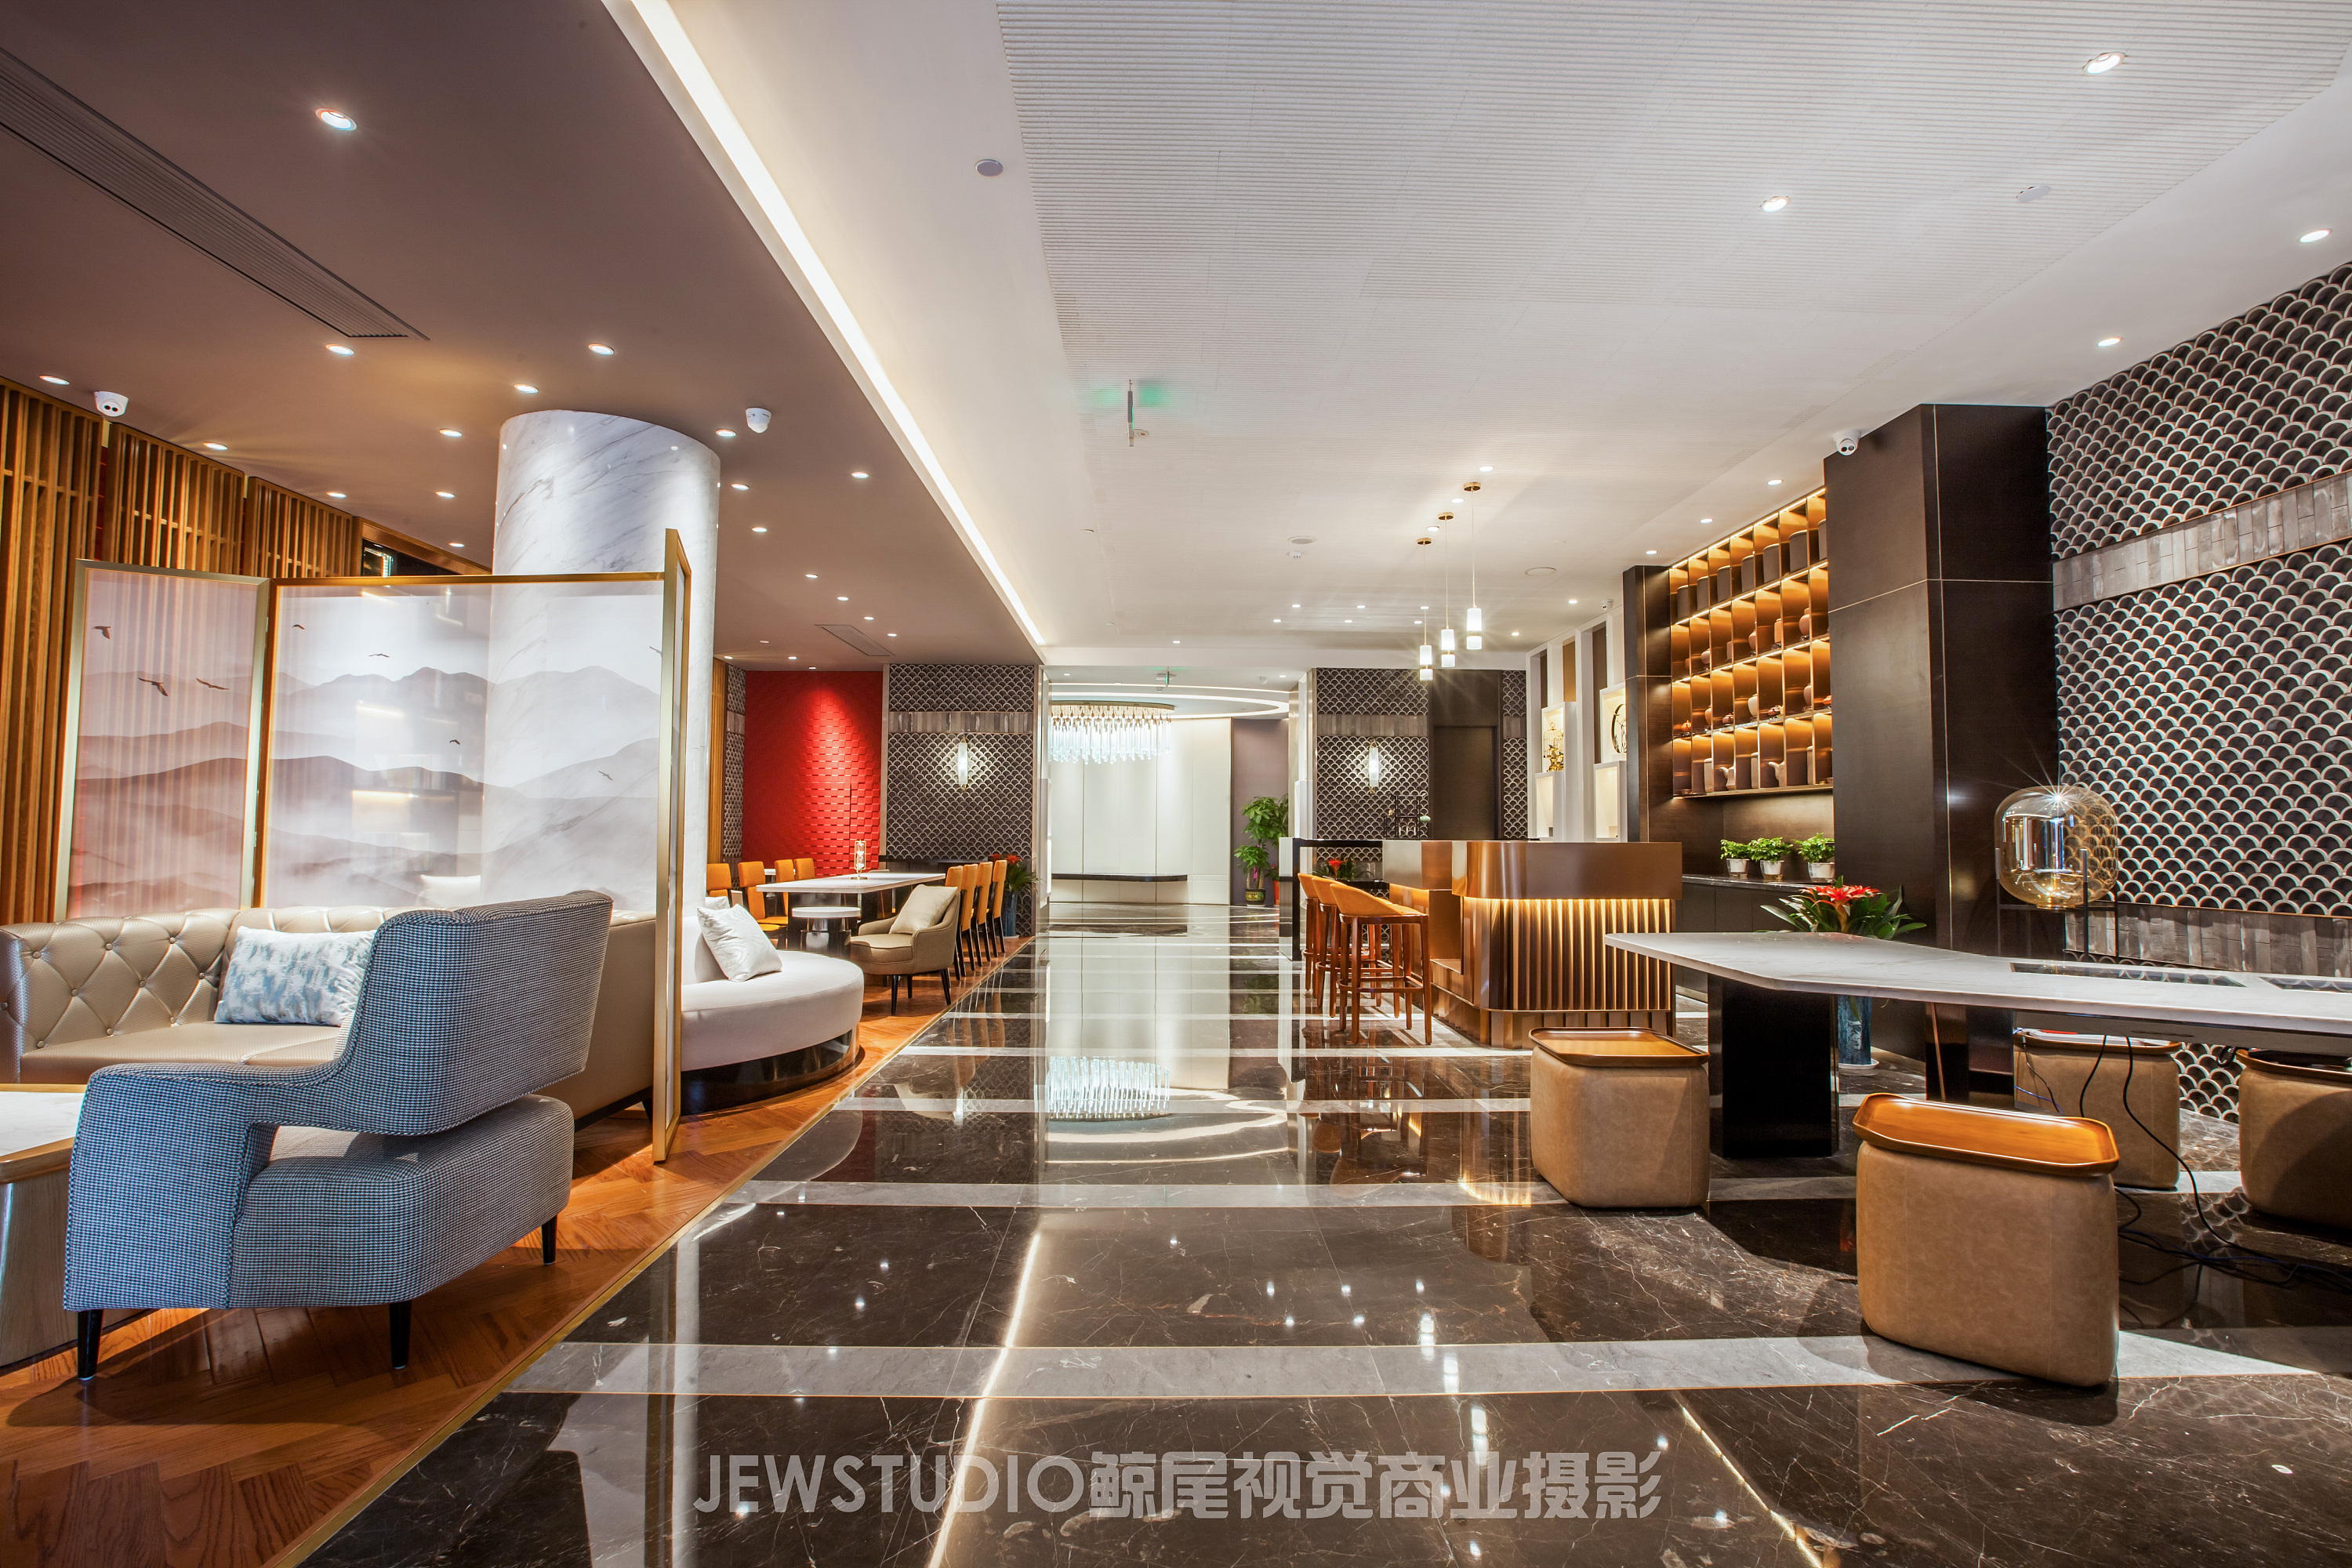 锦江都城引领文旅探索型酒店加盟热潮 - 第三边际-酒店业一站式服务平台